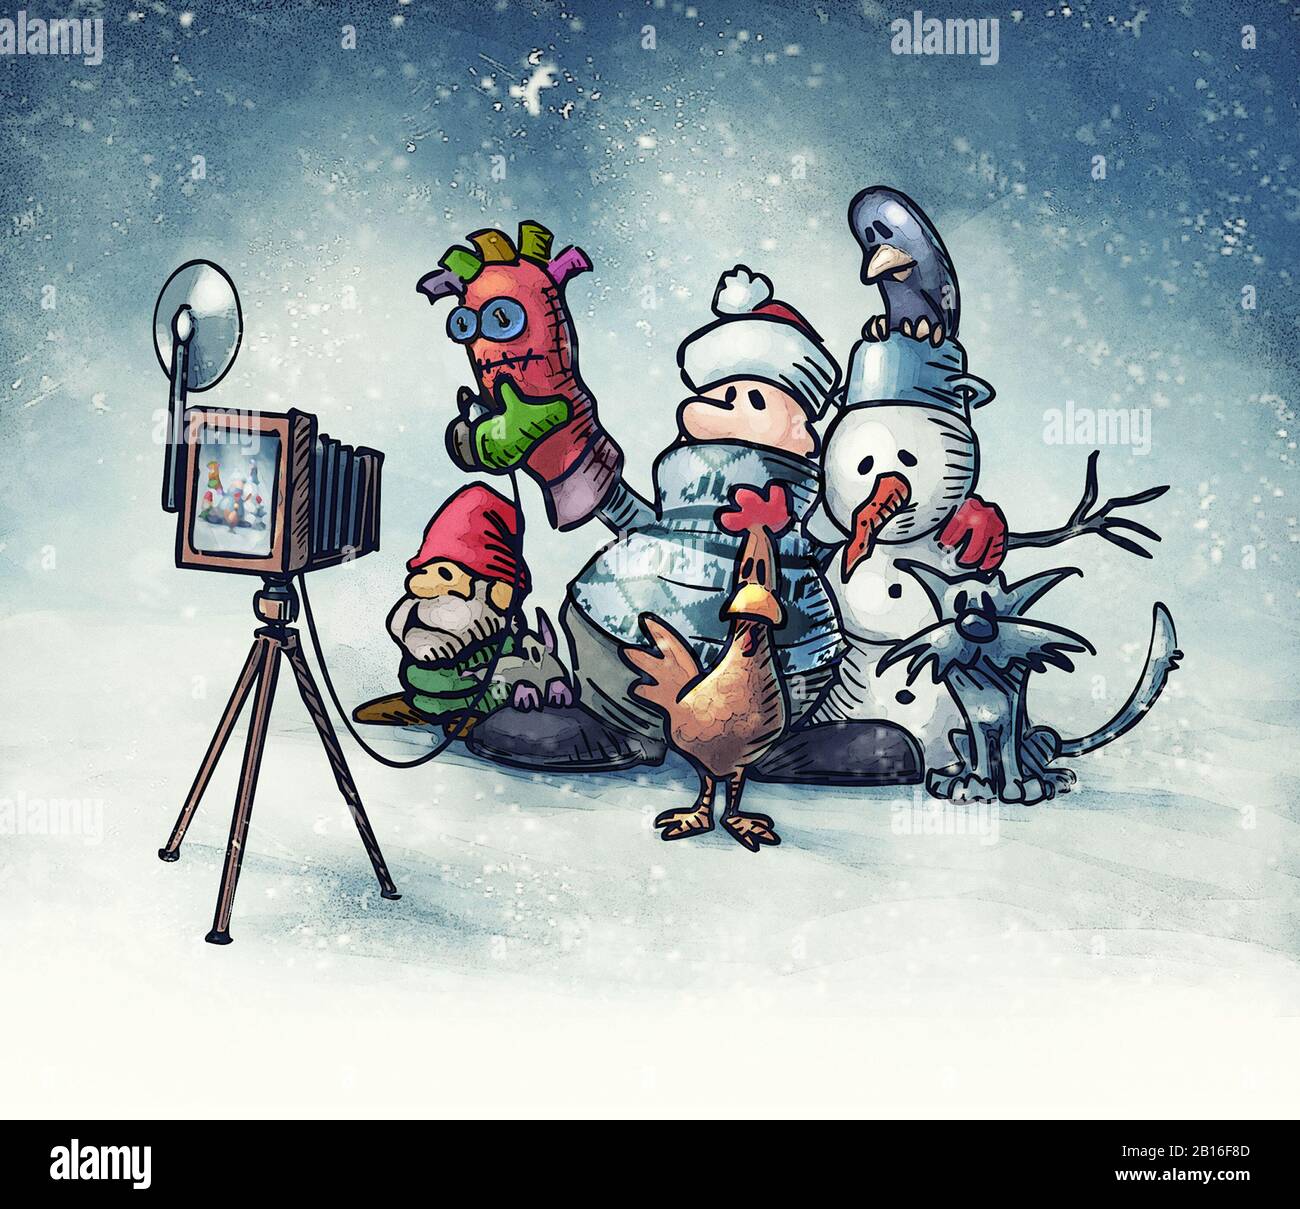 l'homme solitaire avec bonhomme de neige, le nain de plâtre et les animaux prend des photos de lui-même pour la photo de groupe "avec des amis" - illustration de dessin animé Banque D'Images